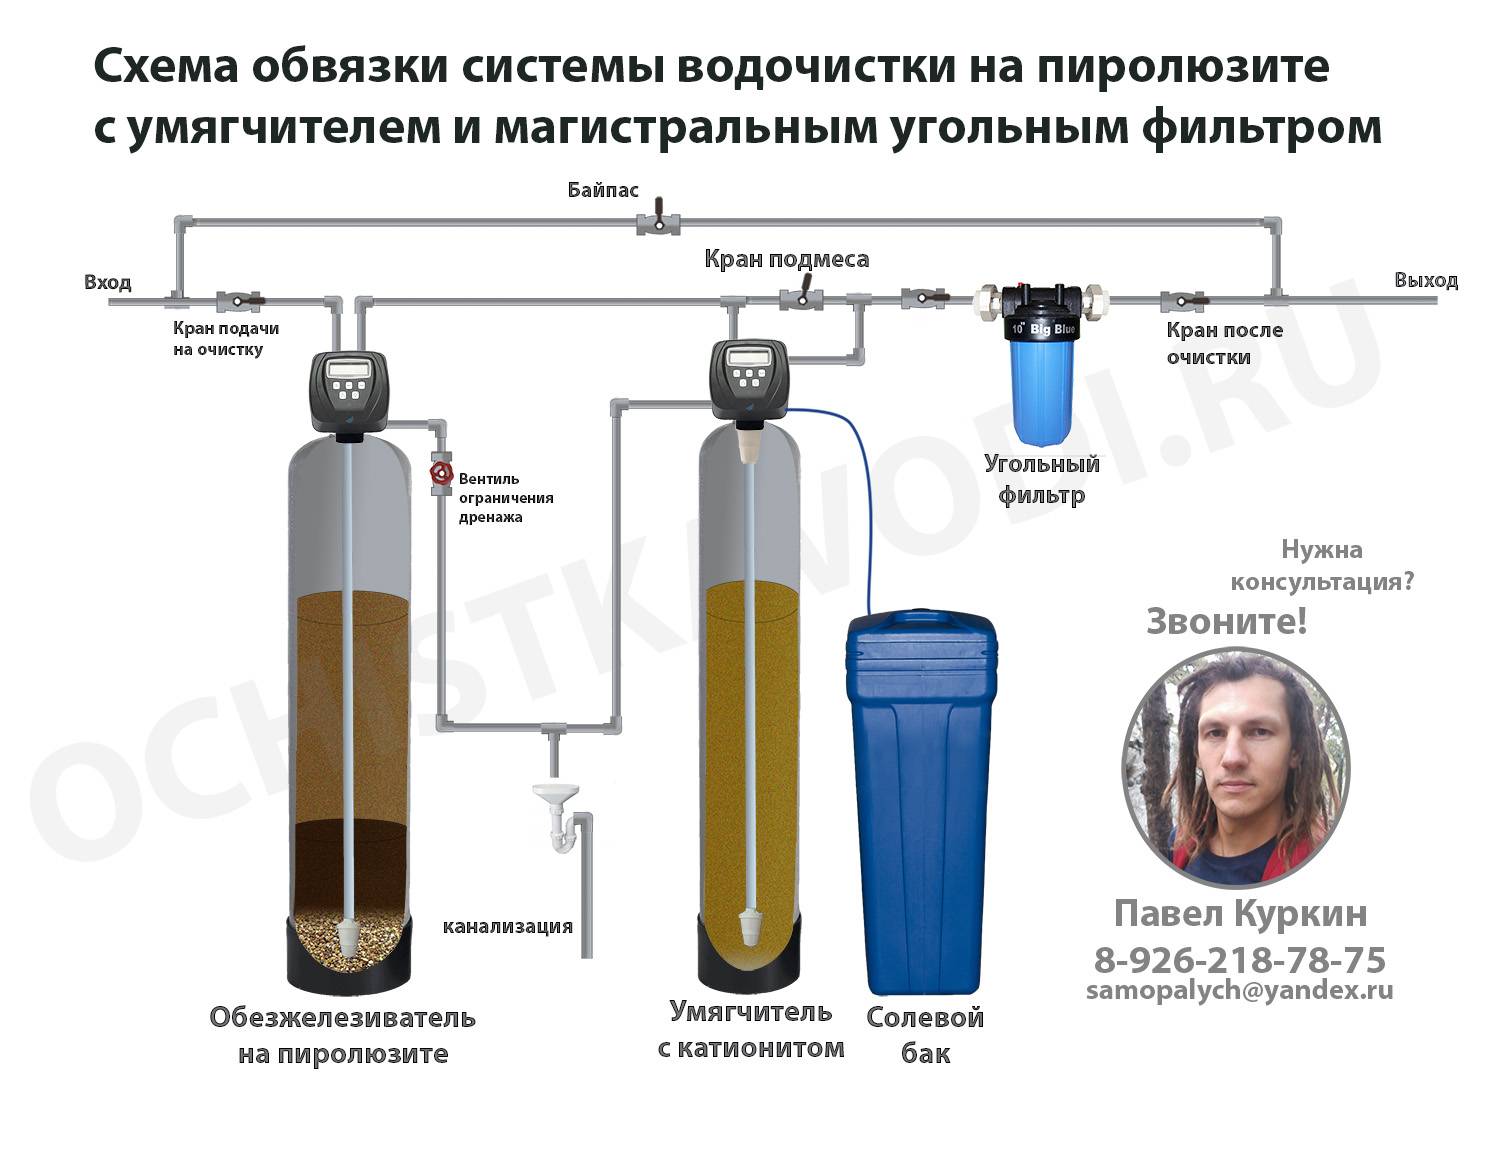 Самодельные фильтры для очистки воды из скважины - утилизация и переработка отходов производства